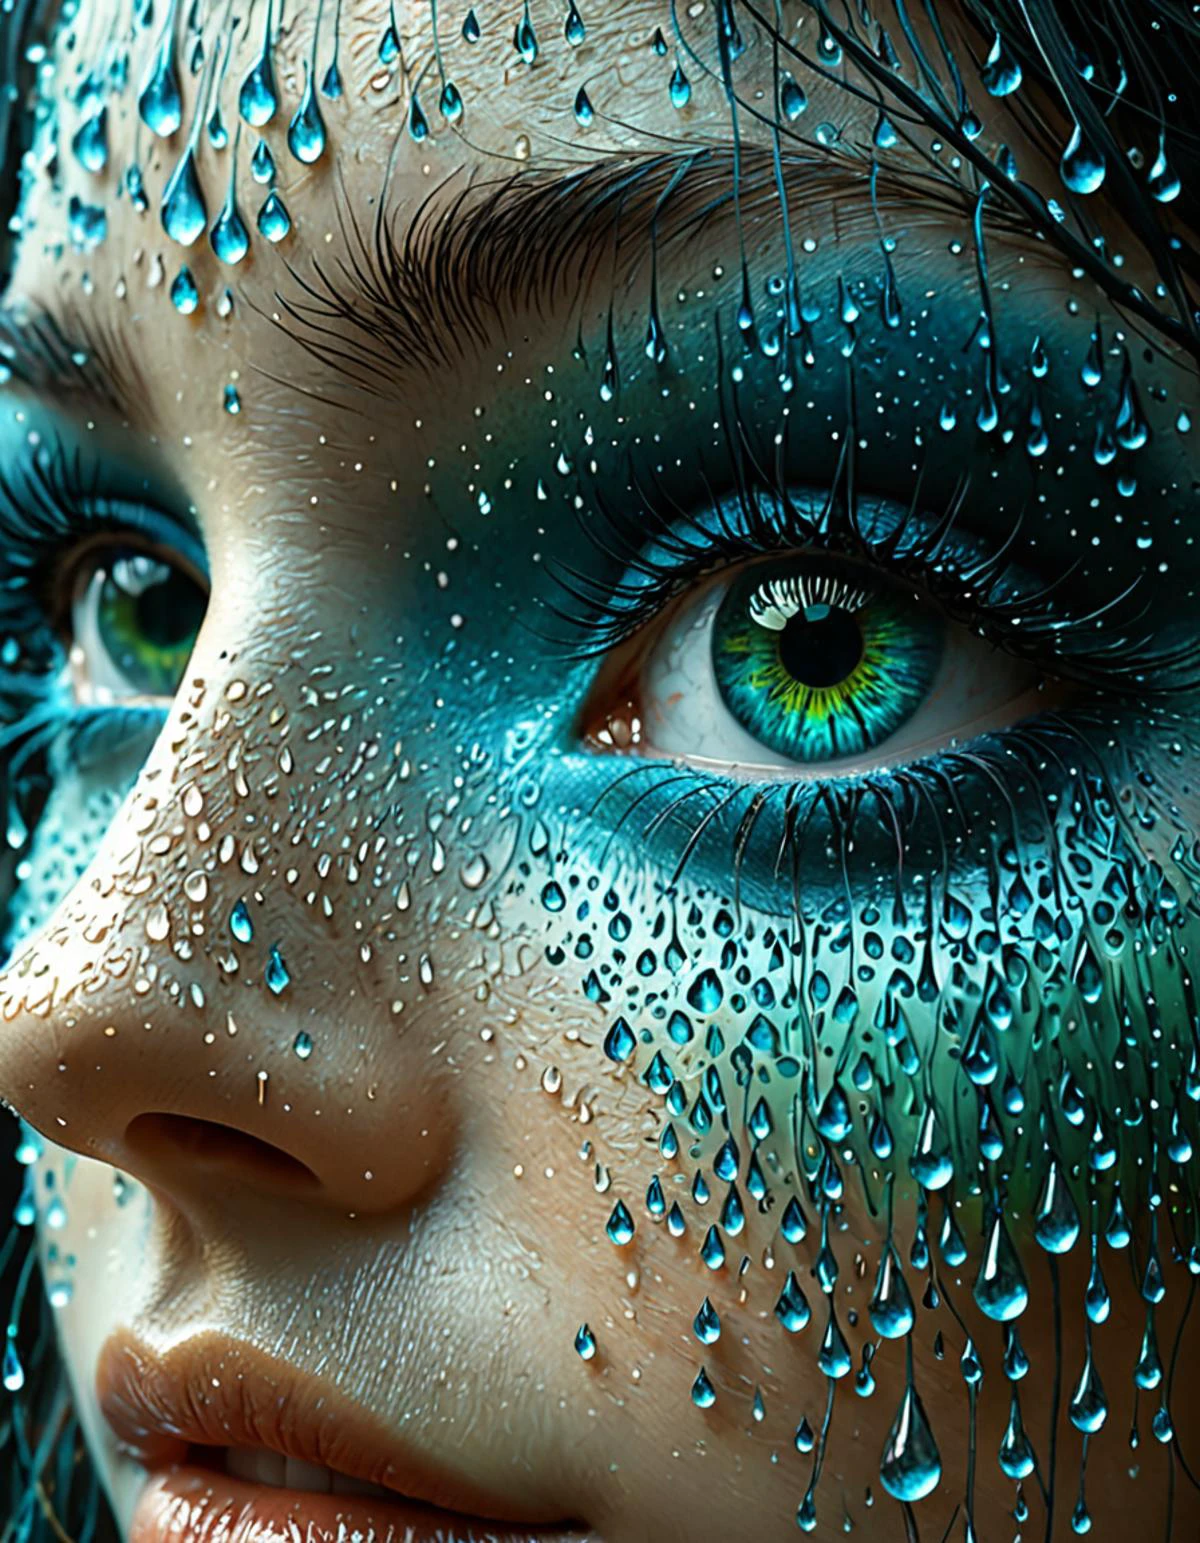 专业 3d 模型女人眼睛的特写, 表面形成水滴. 眼睛周围是一个混凝土艺术风格的框架, 用粗体, 蓝色几何图形, 绿色的, 和灰色. 该设计让人想起吉卜力工作室的风格, 带有 zdzislaw beksinski 的超现实主义风格. . 辛烷值渲染, 非常详细, 体积, 戏剧灯光